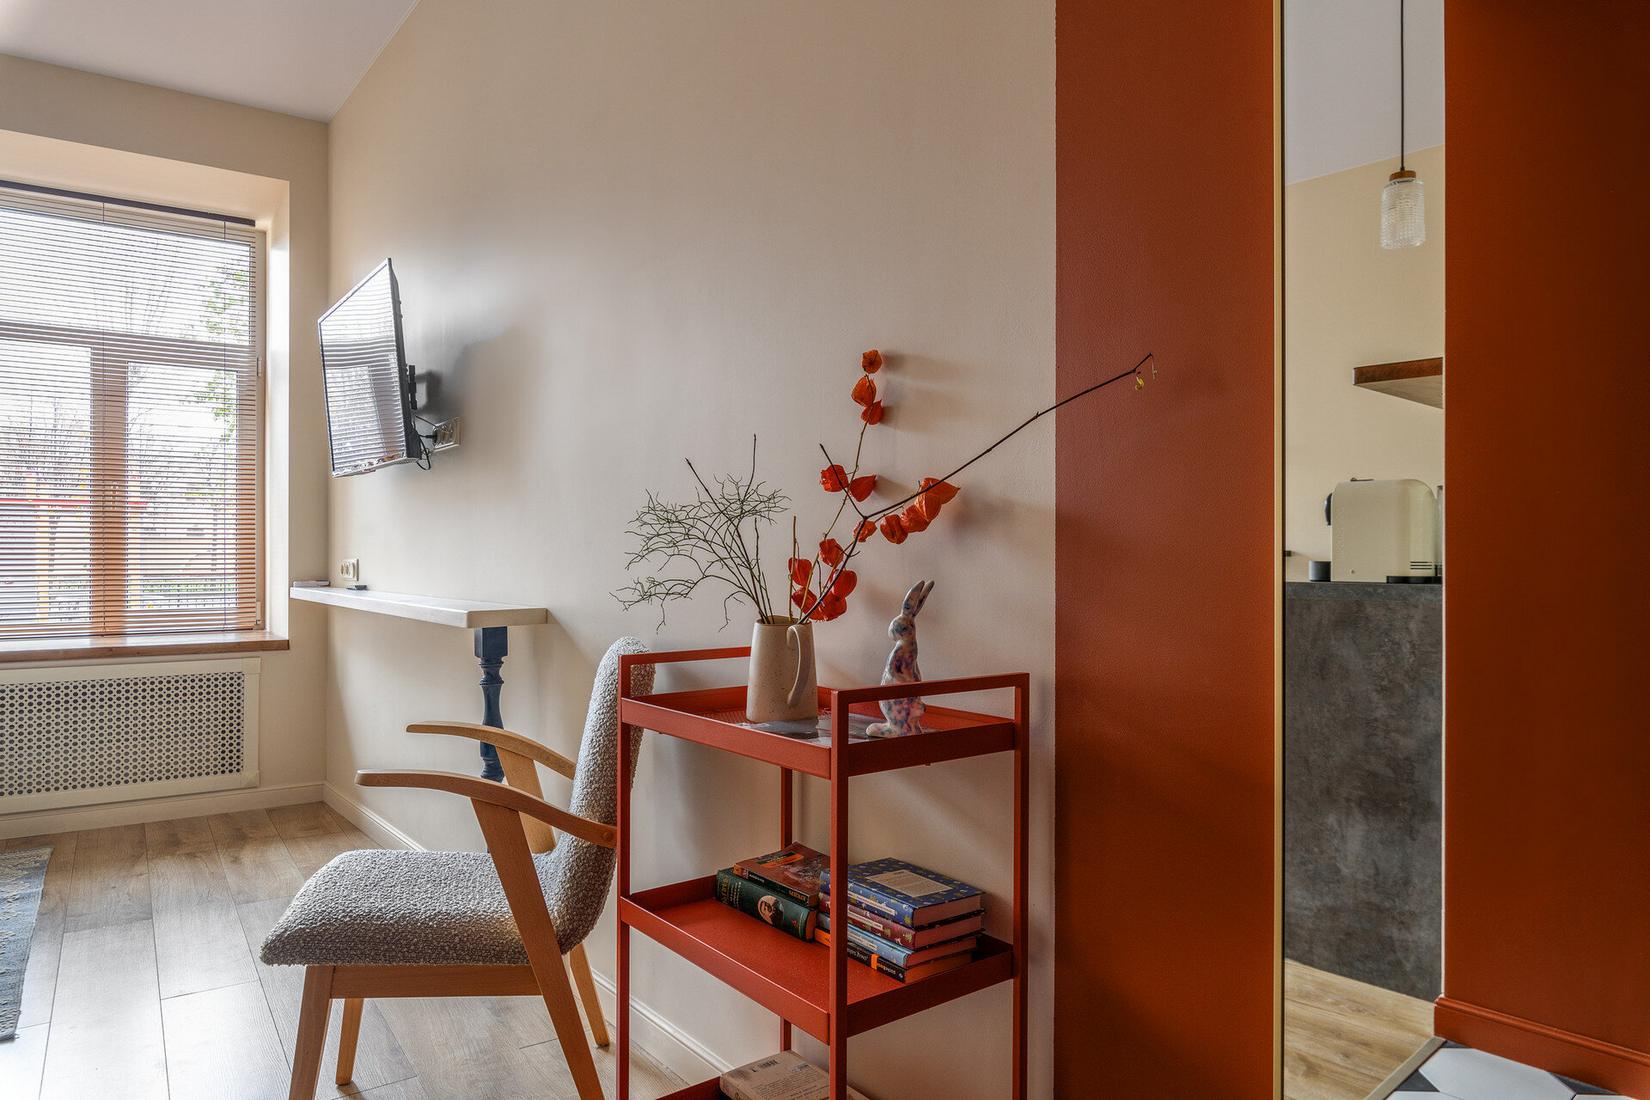 Egyszerűen de stílusosan berendezett mini lakás - 24m2, ahol szép mély színek teszik különlegessé a teret